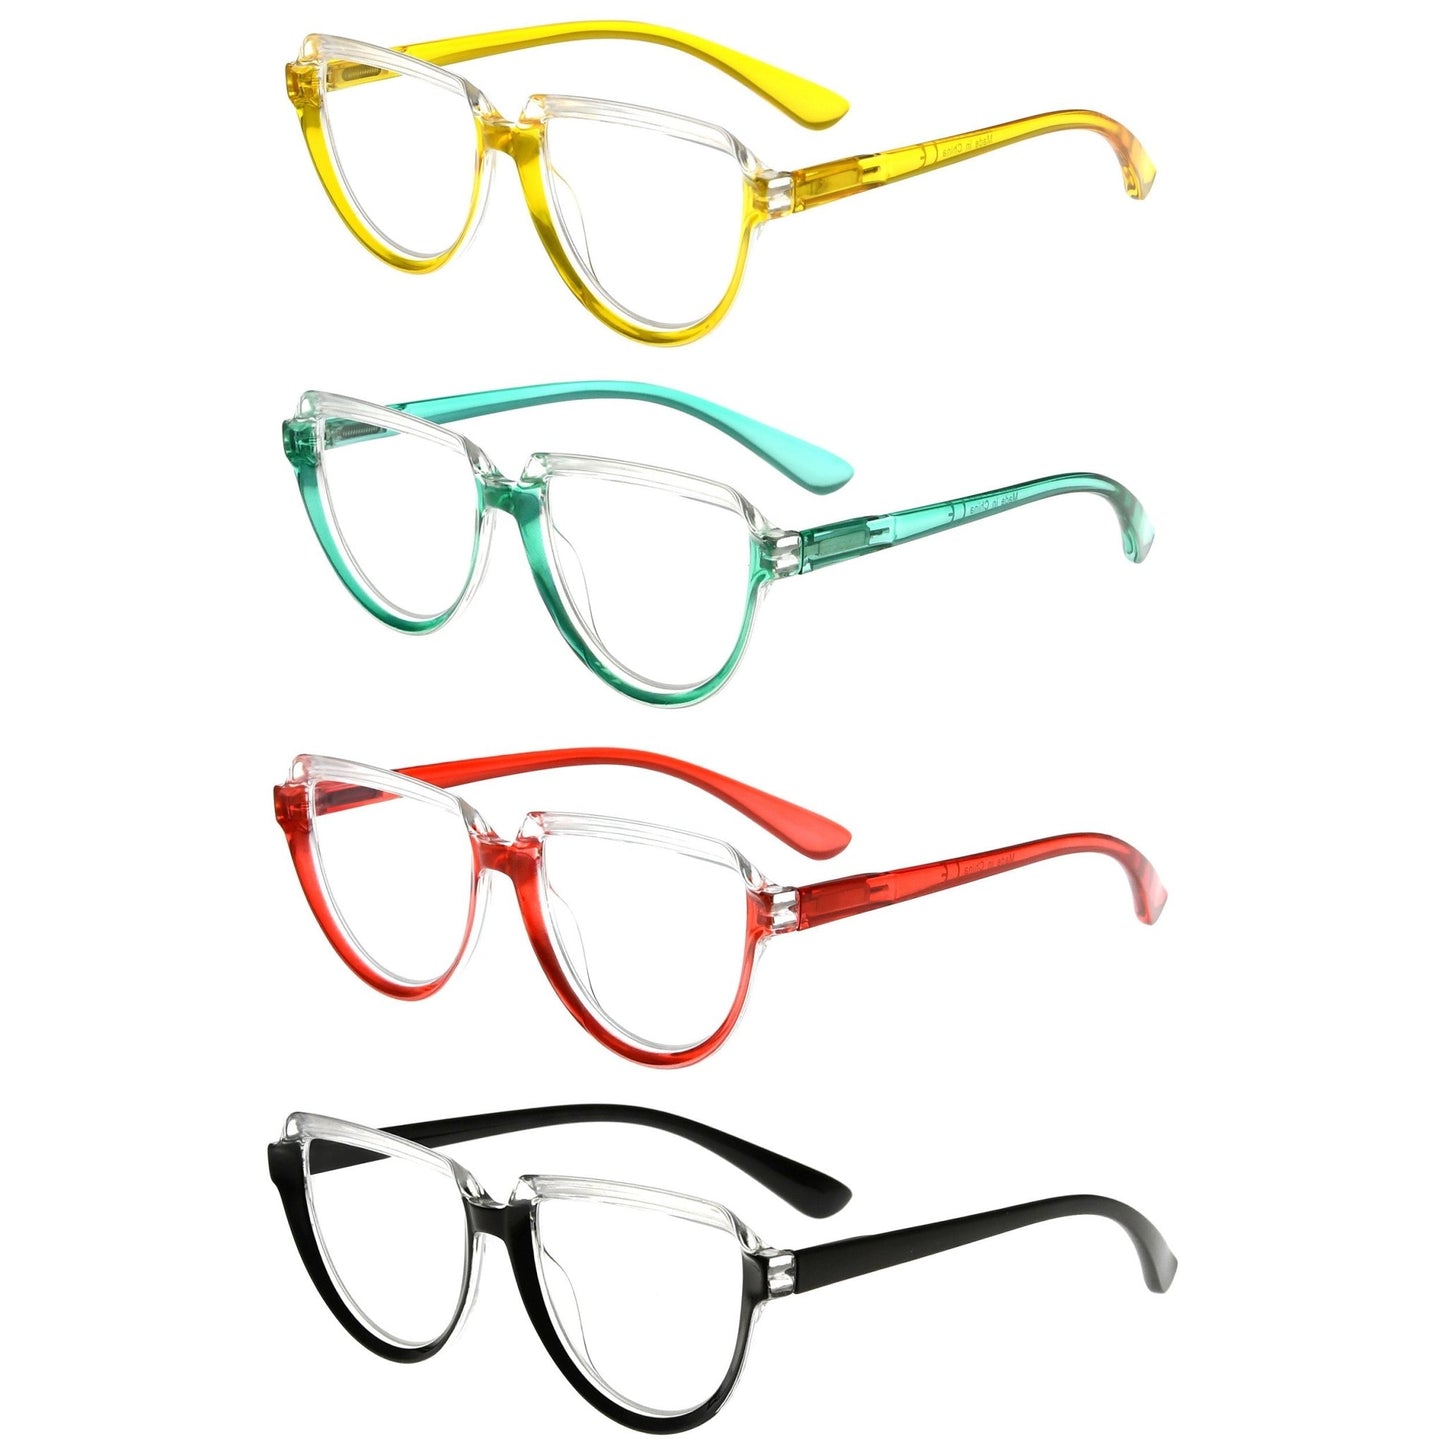 4 Pack Oversize Half Moon Reading Glasses for Women R2006